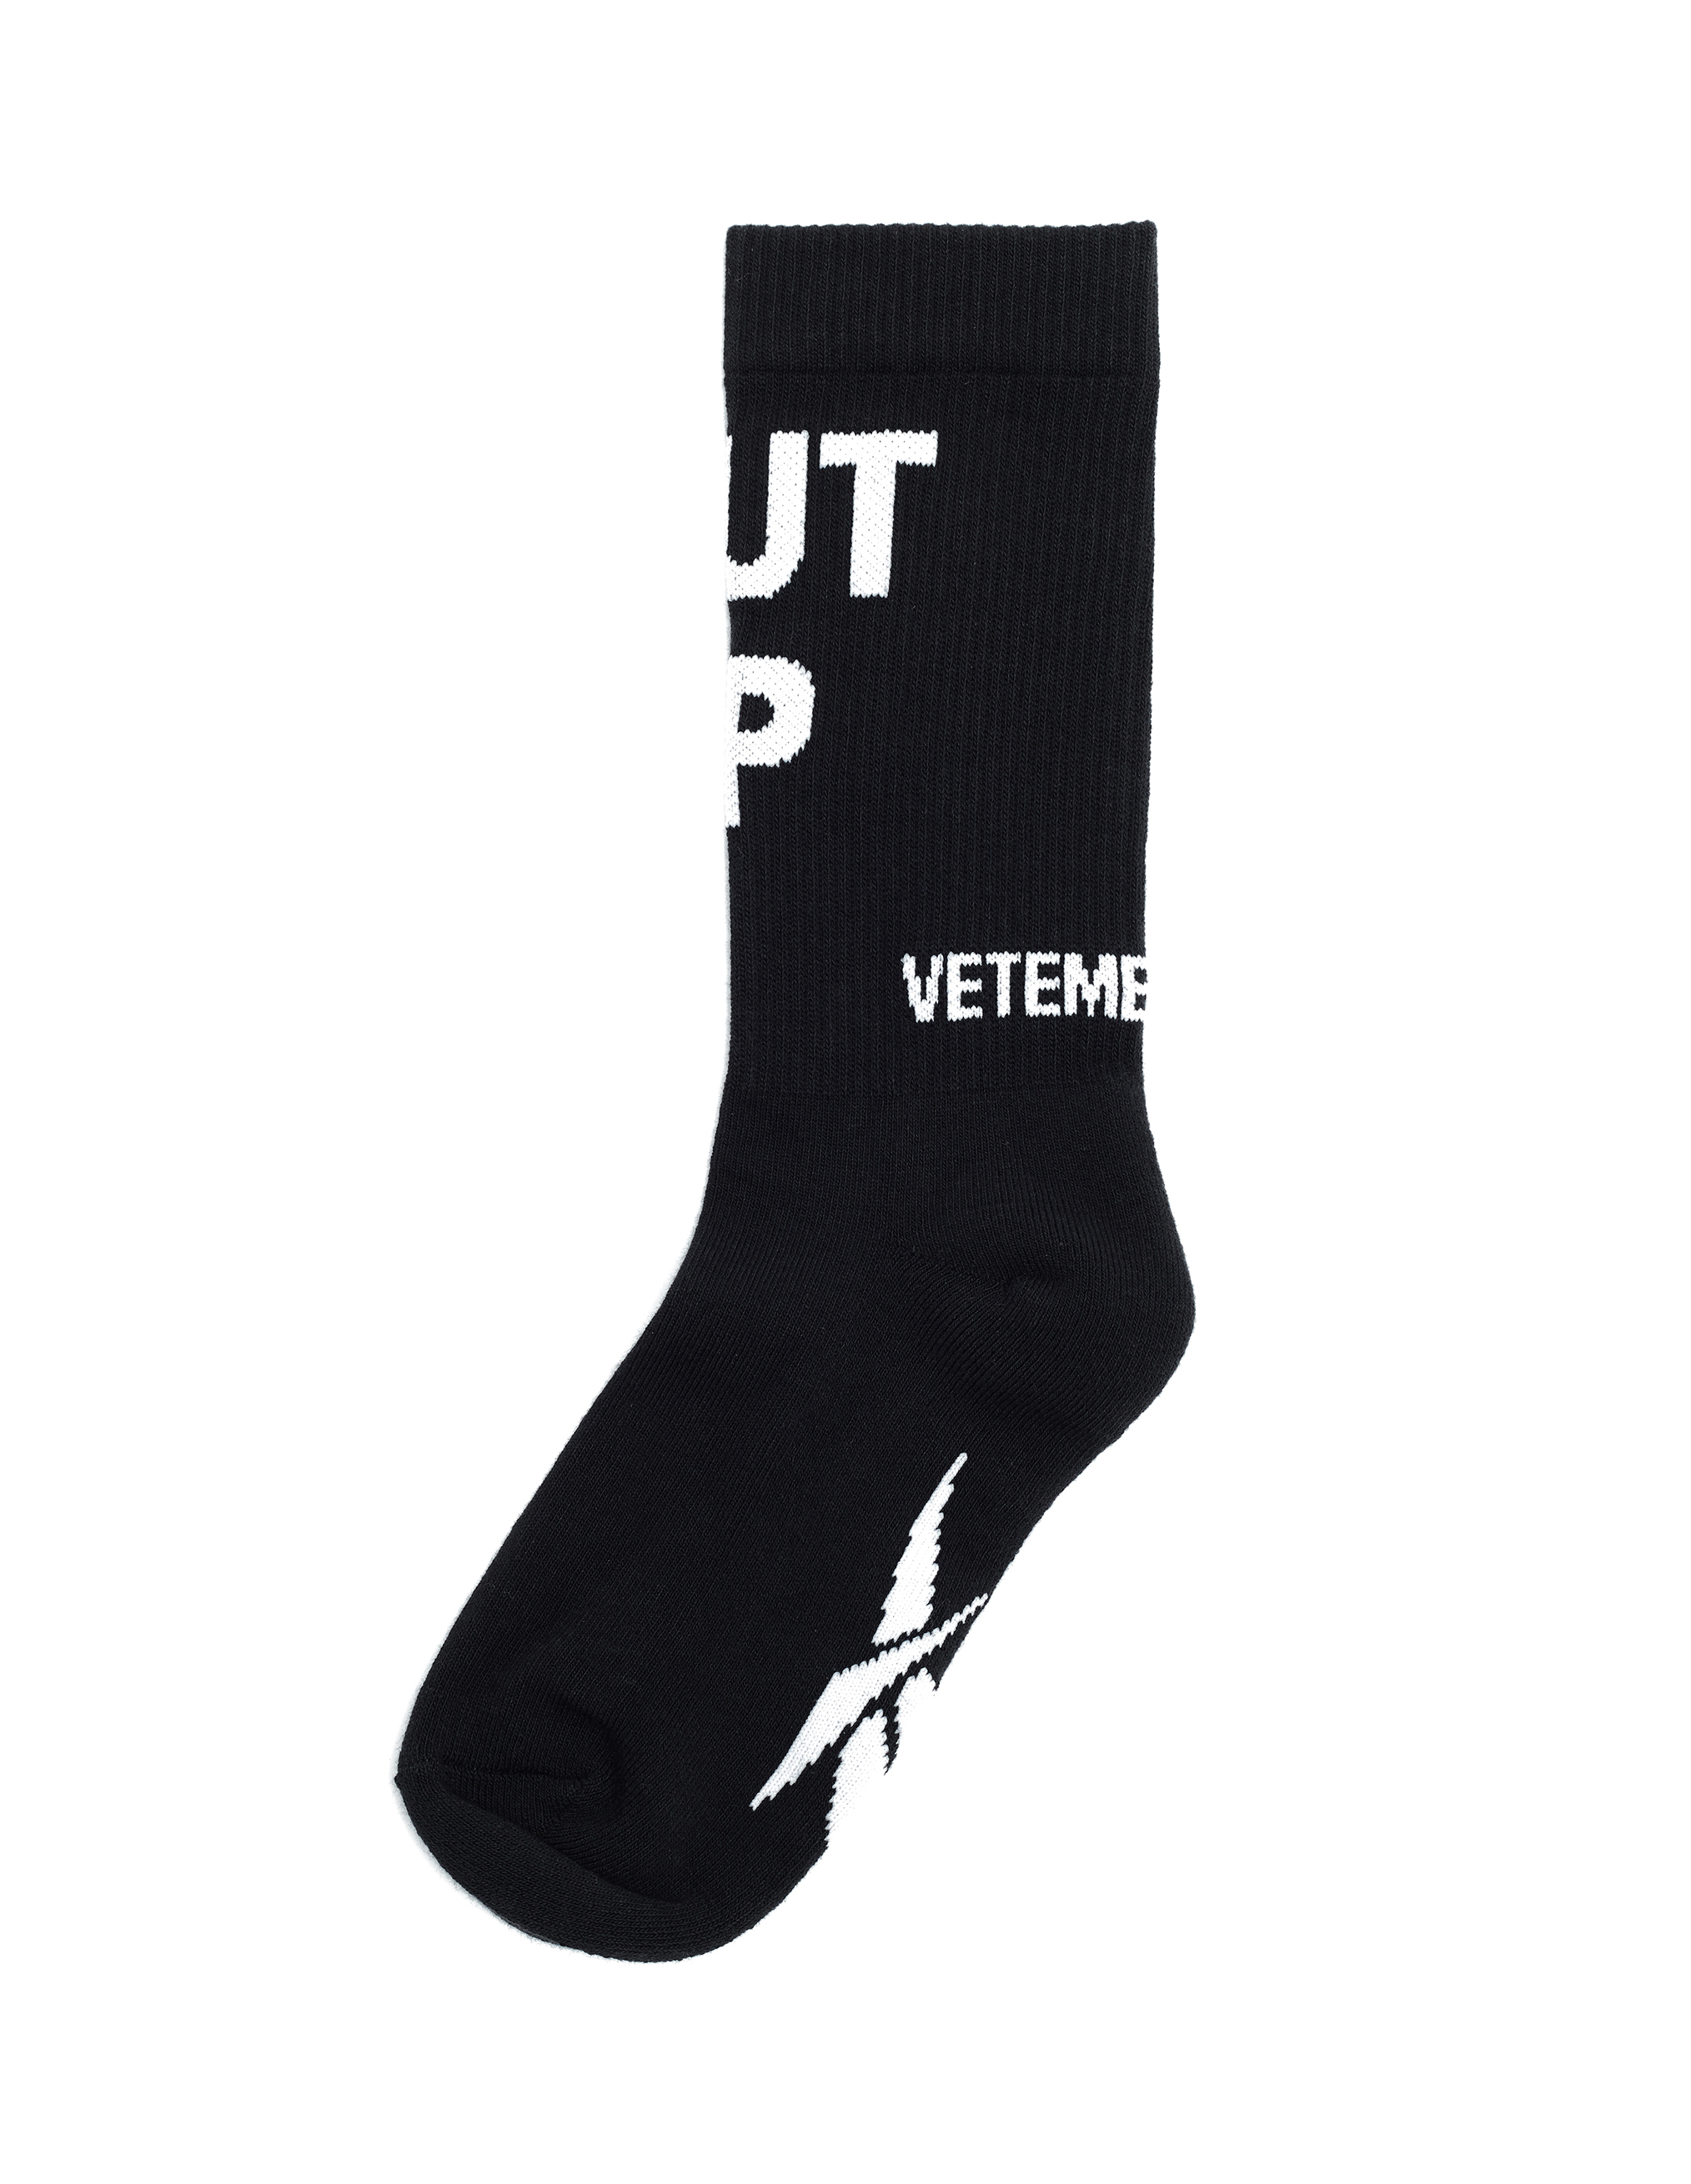 Черные носки Shut Up - Vetements SS20HO002/blk Фото 2